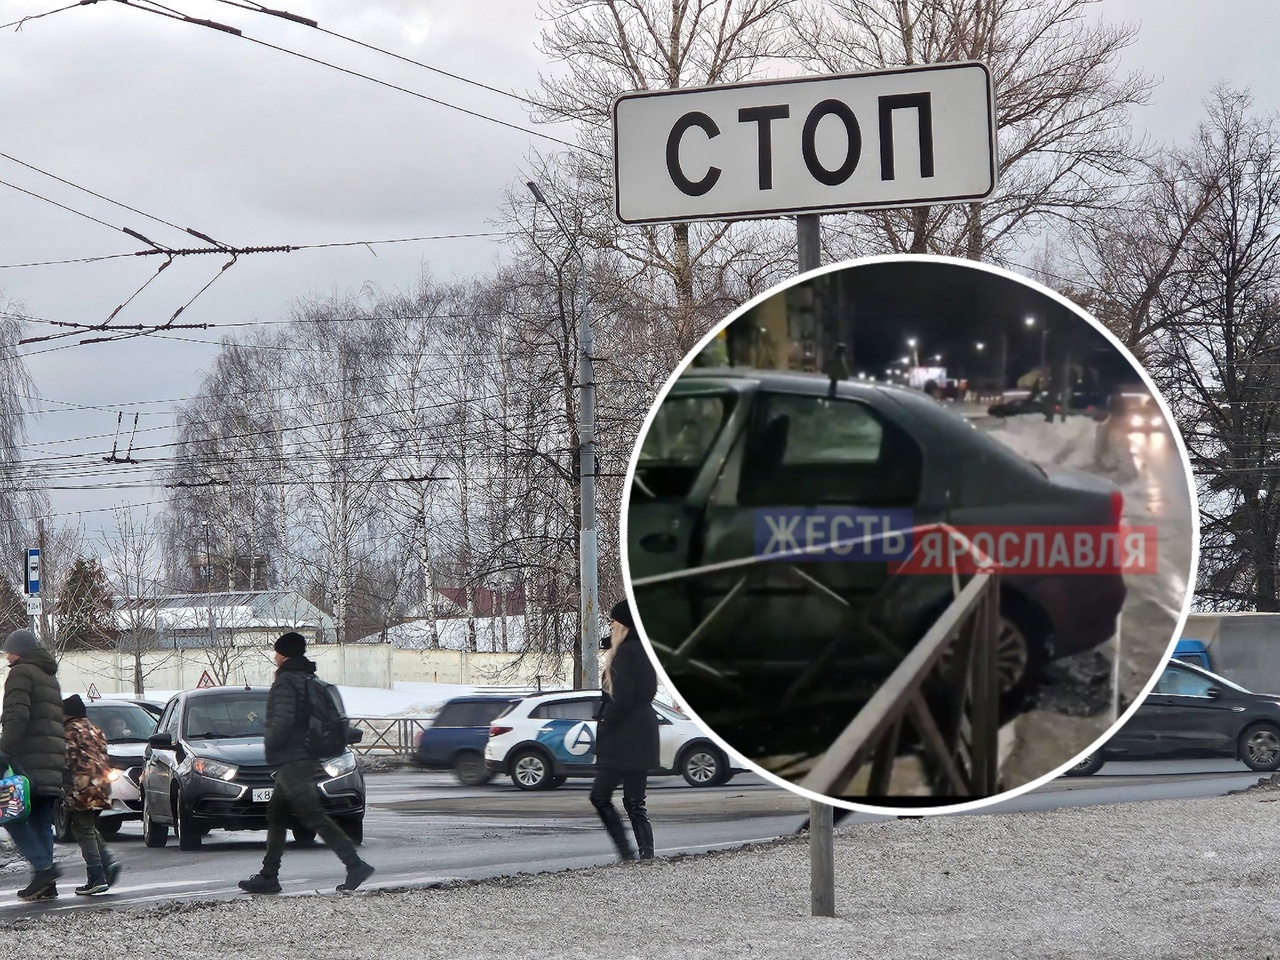 В Ярославле машина влетела в забор на пешеходную зону